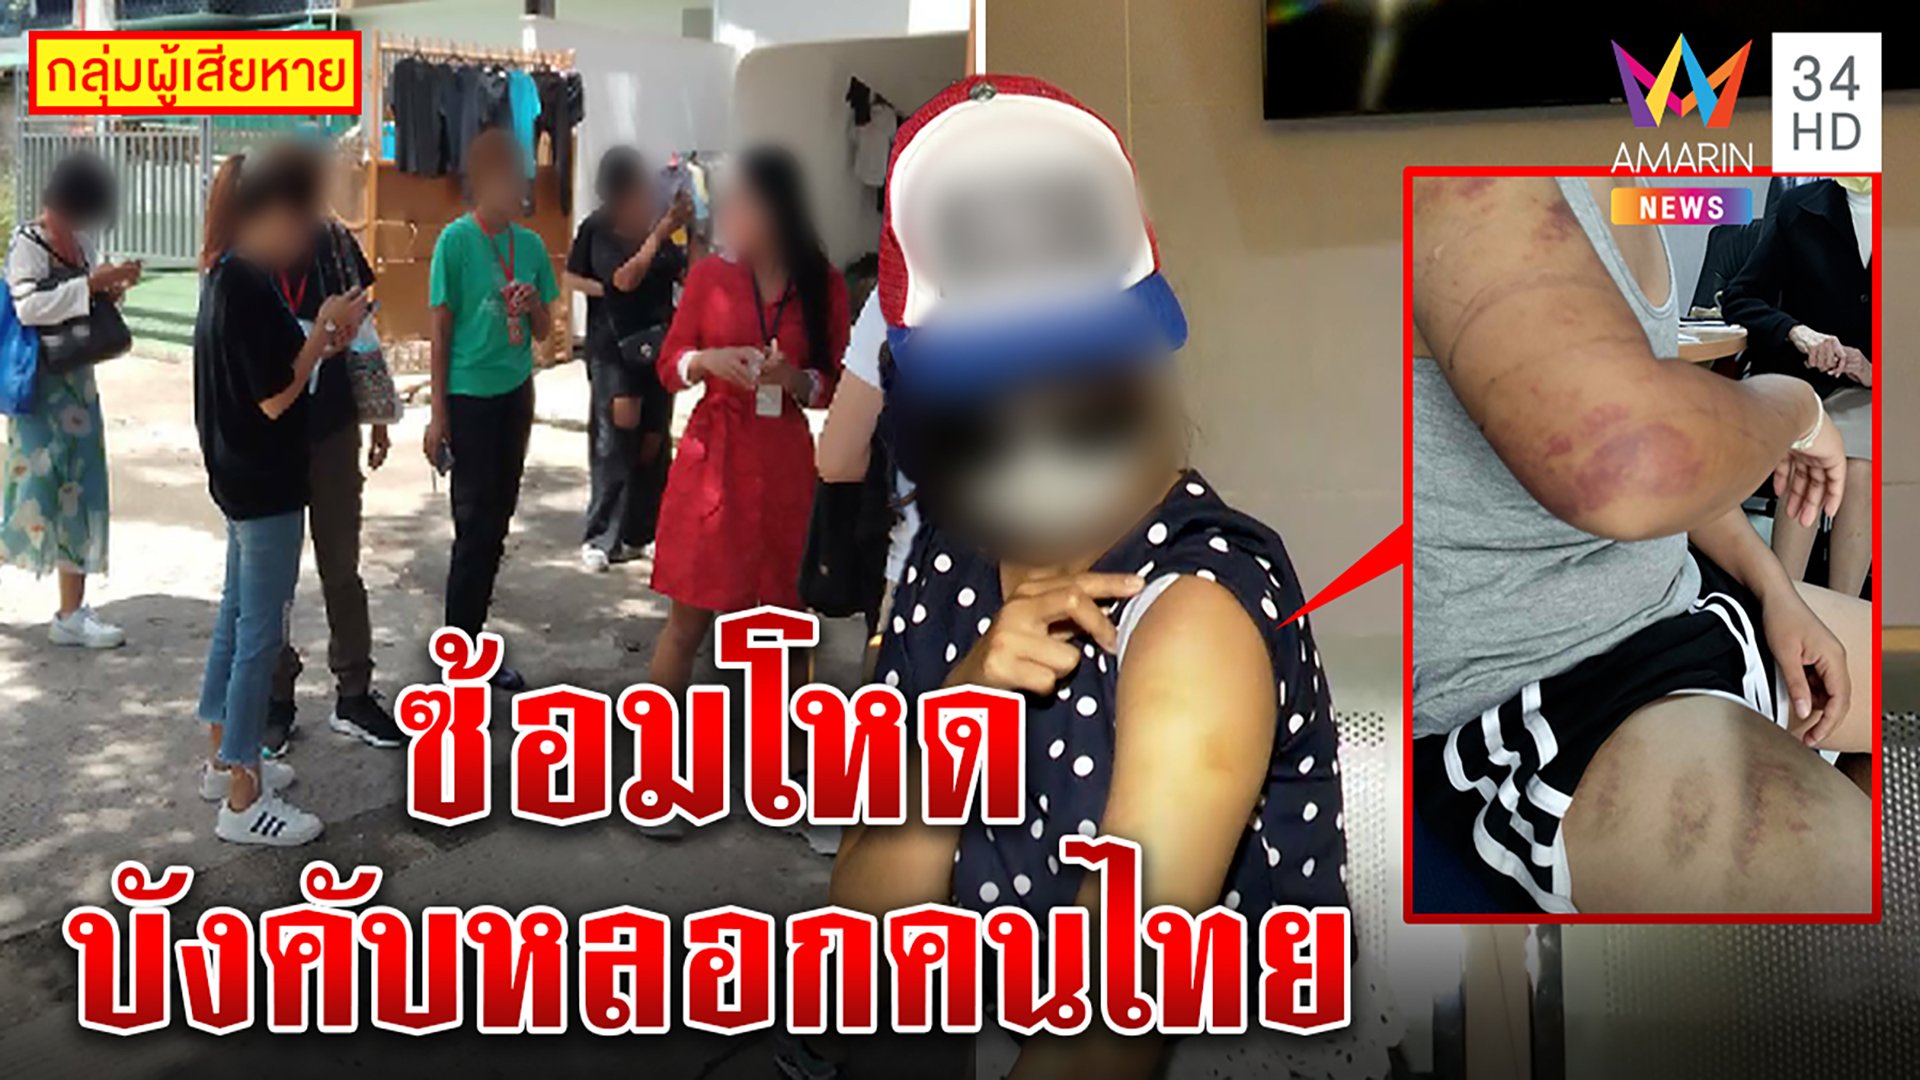 ลากไส้ “โรแมนซ์สแกม” ลวงคนไทยขังฟิลิปปินส์ ชอร์ตไฟ-กดน้ำ รีดเงินแสนแลกอิสรภาพ | ทุบโต๊ะข่าว | 31 ส.ค. 65 | AMARIN TVHD34